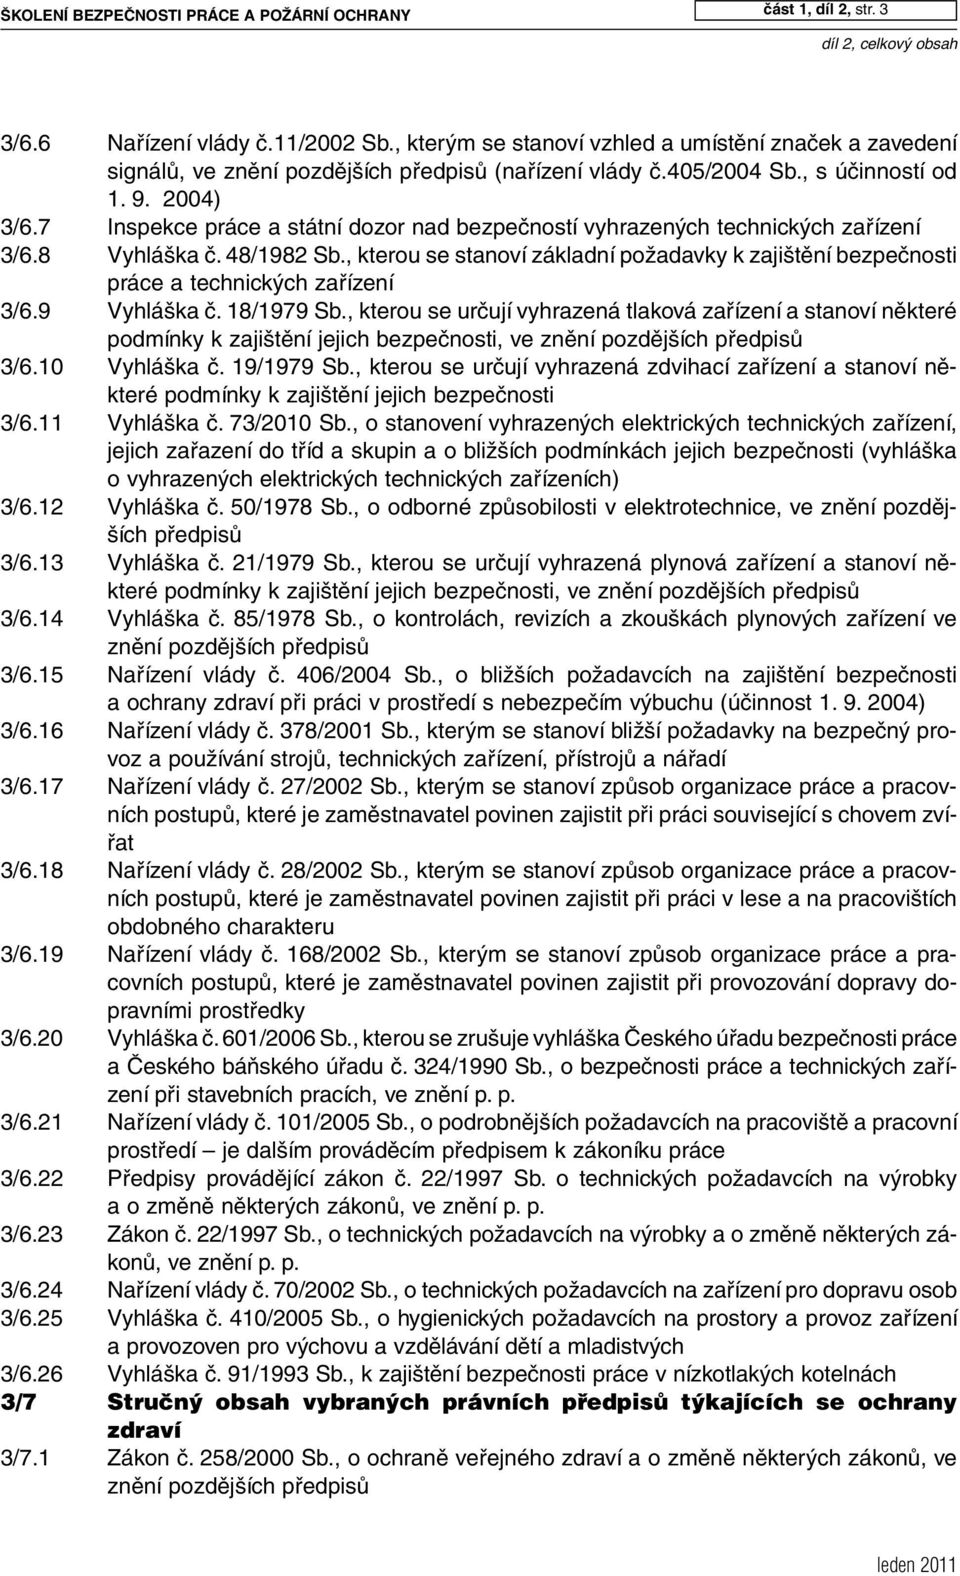 7 Inspekce práce a státní dozor nad bezpečností vyhrazených technických zařízení 3/6.8 Vyhláška č. 48/1982 Sb.